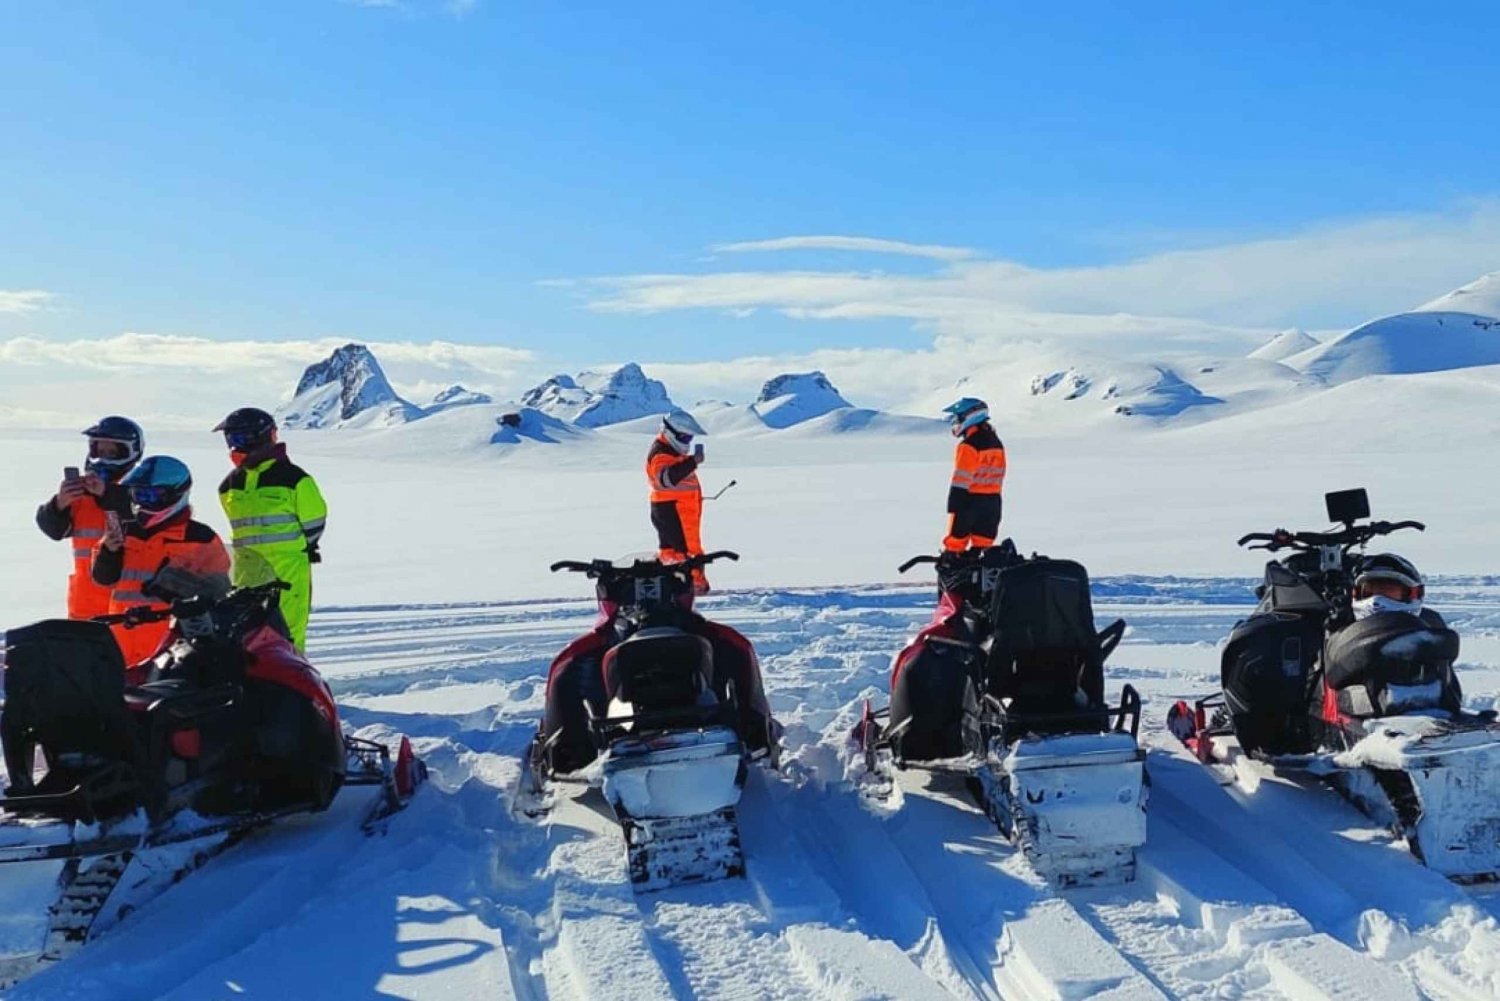 Z Geysir: Przygoda na skuterach śnieżnych na lodowcu Langjökull